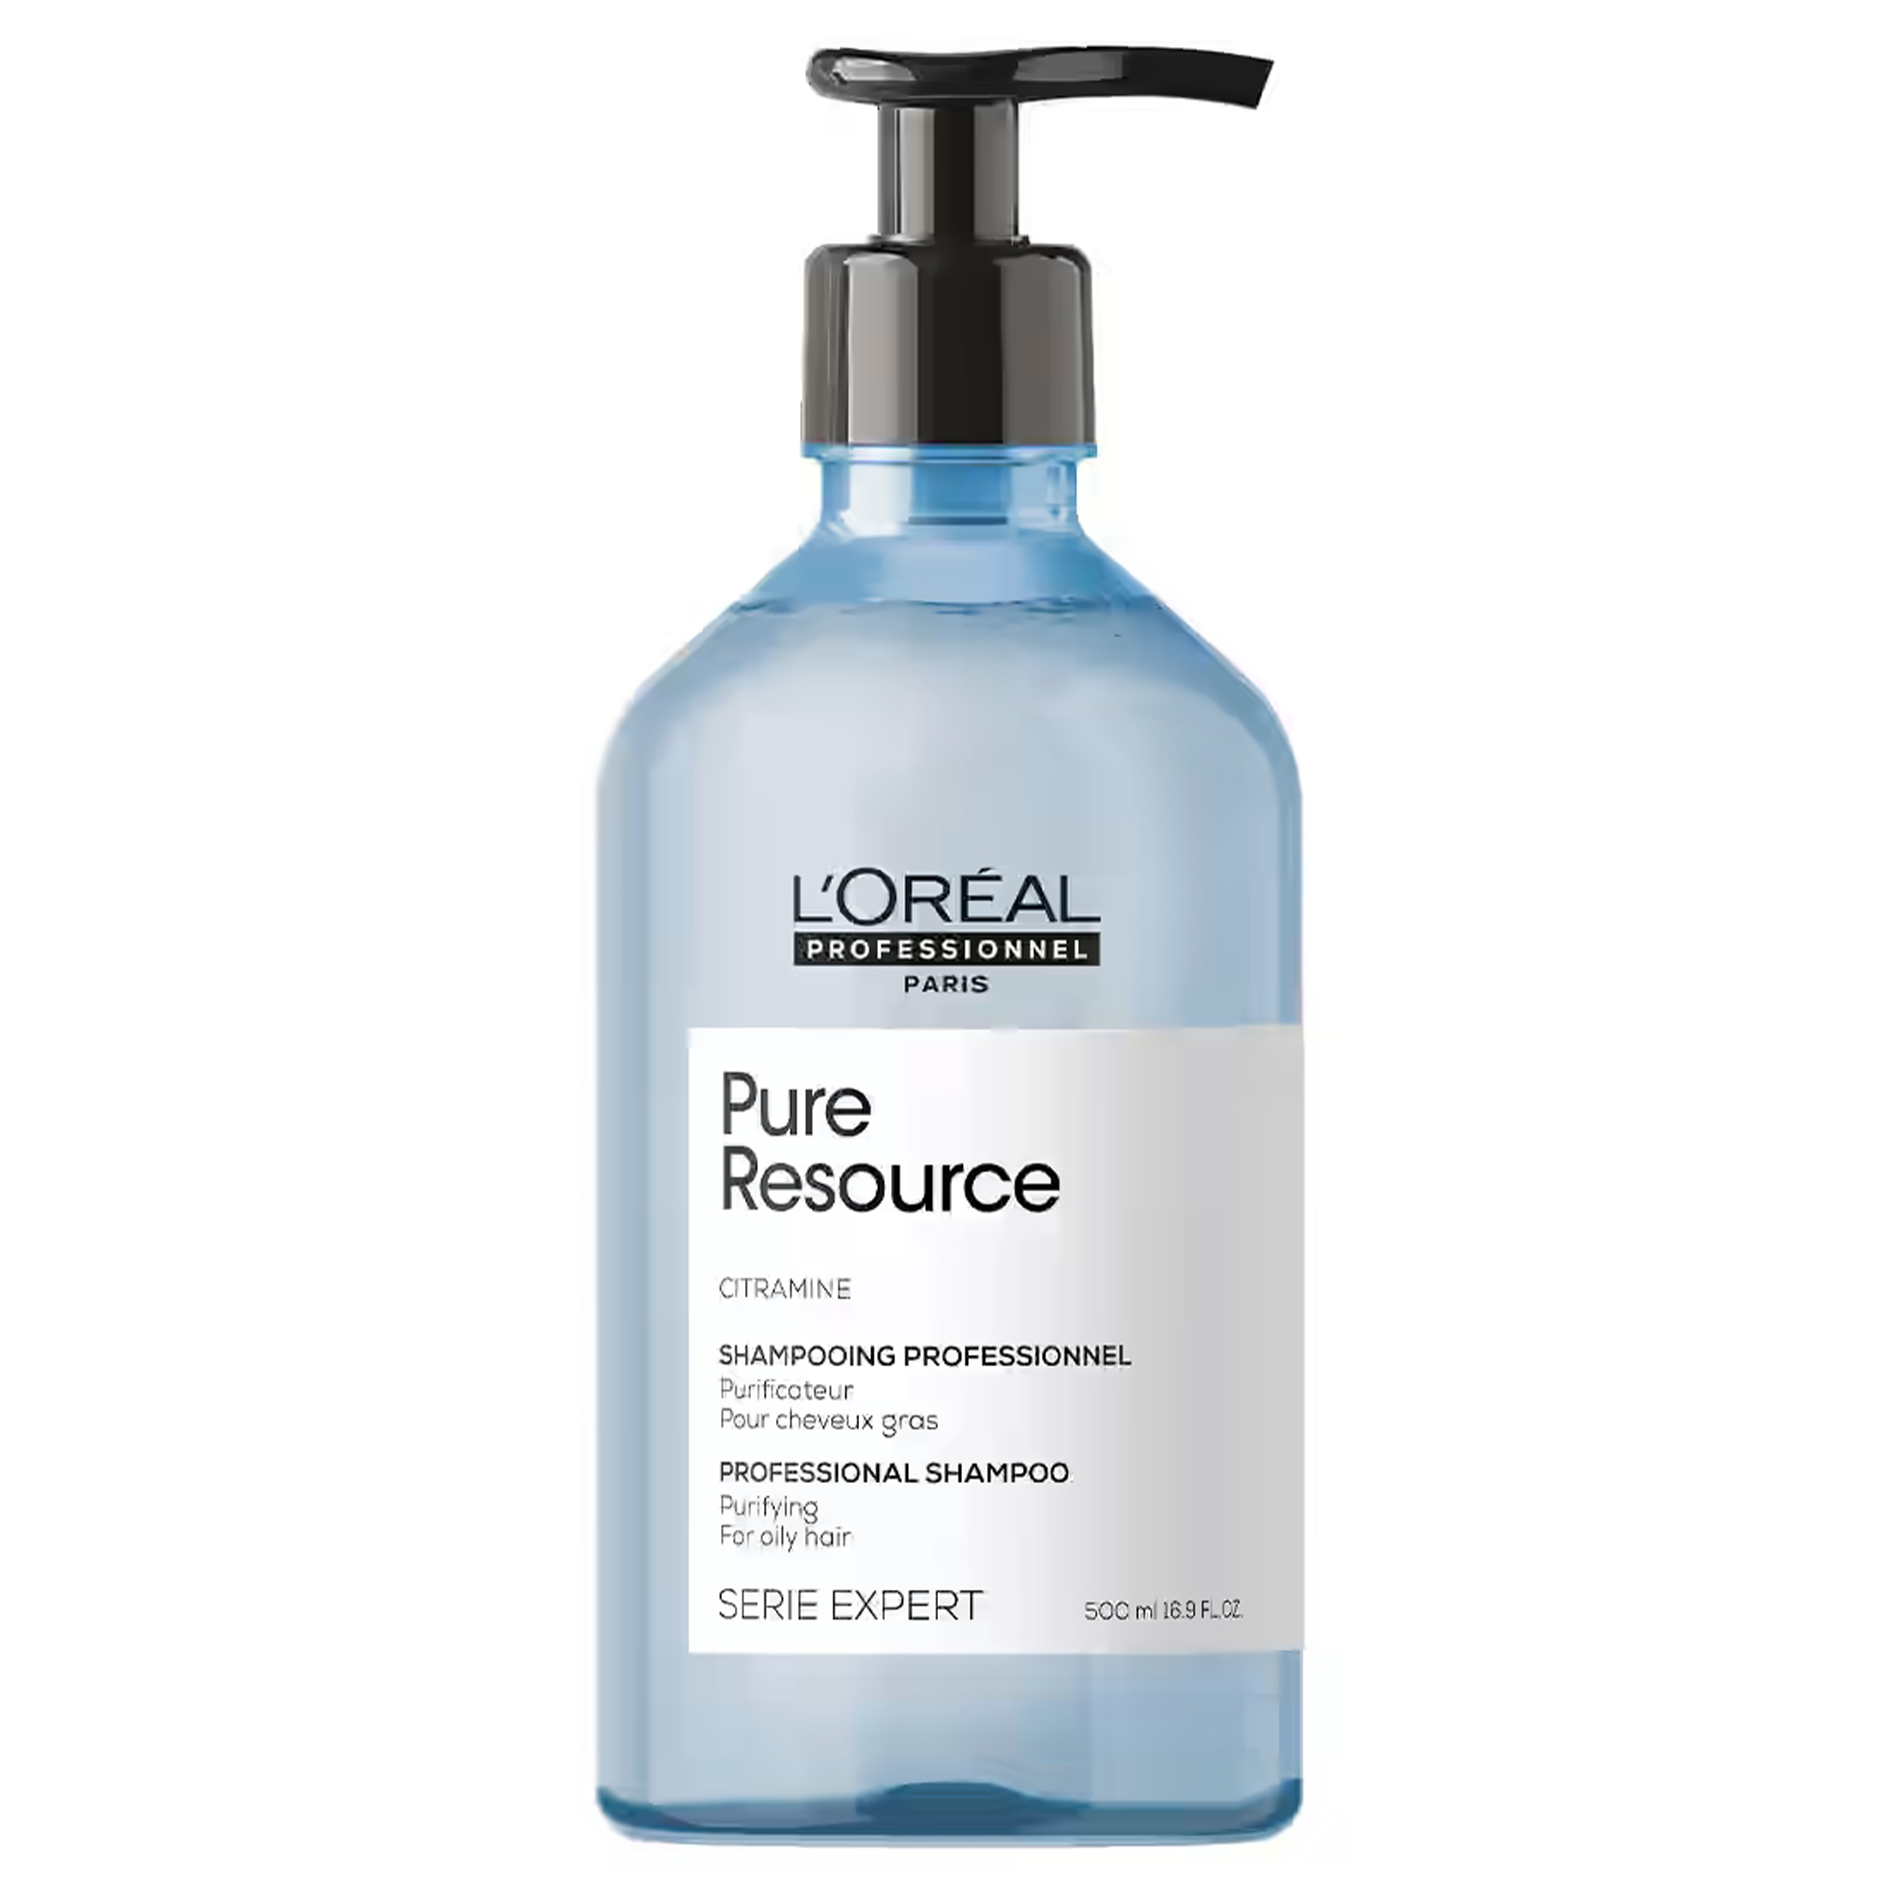 Шампунь serie. L'Oreal Professionnel Pure resource Shampoo. Loreal Expert шампунь. Шампунь Сенси баланс 1,5 л лореаль профессиональный.